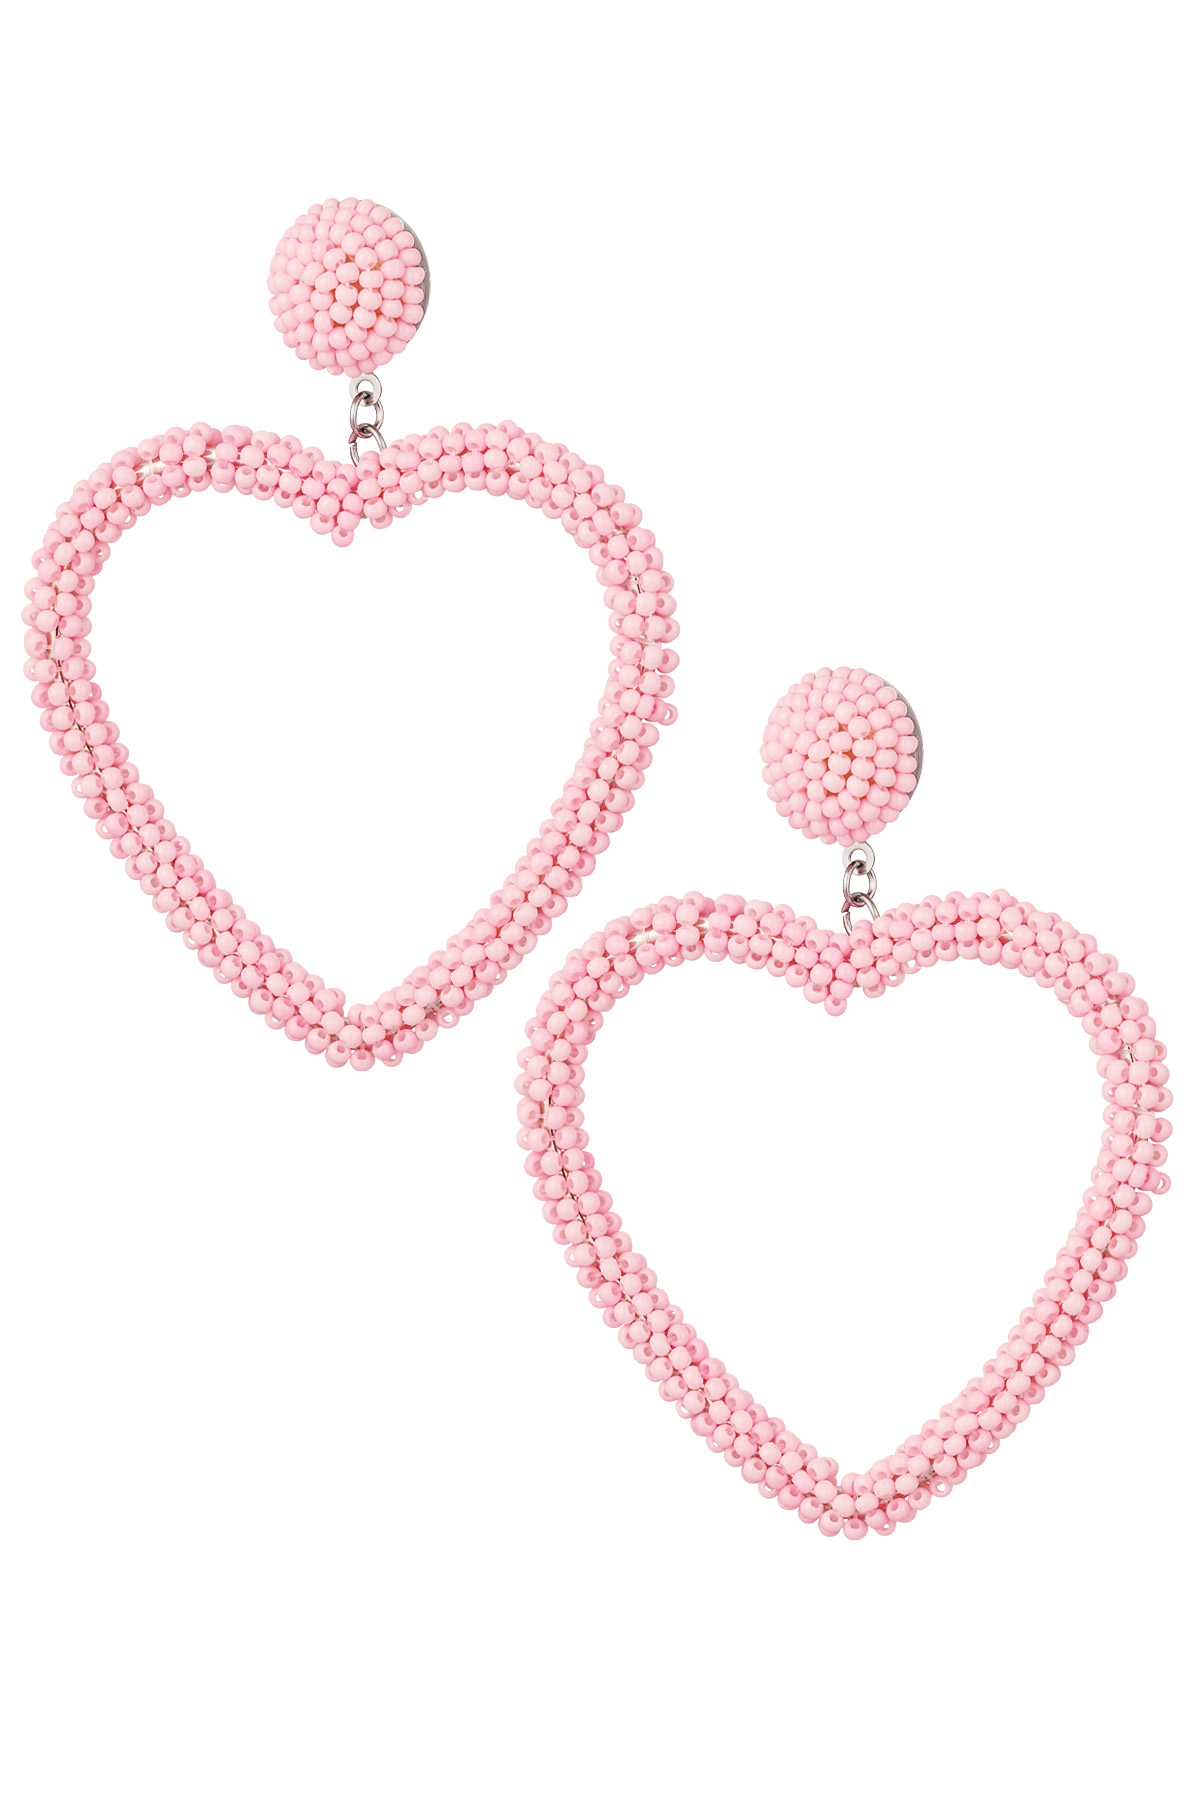 Boucles d'oreilles perles bonbon - rose pastel Acier Inoxydable h5 